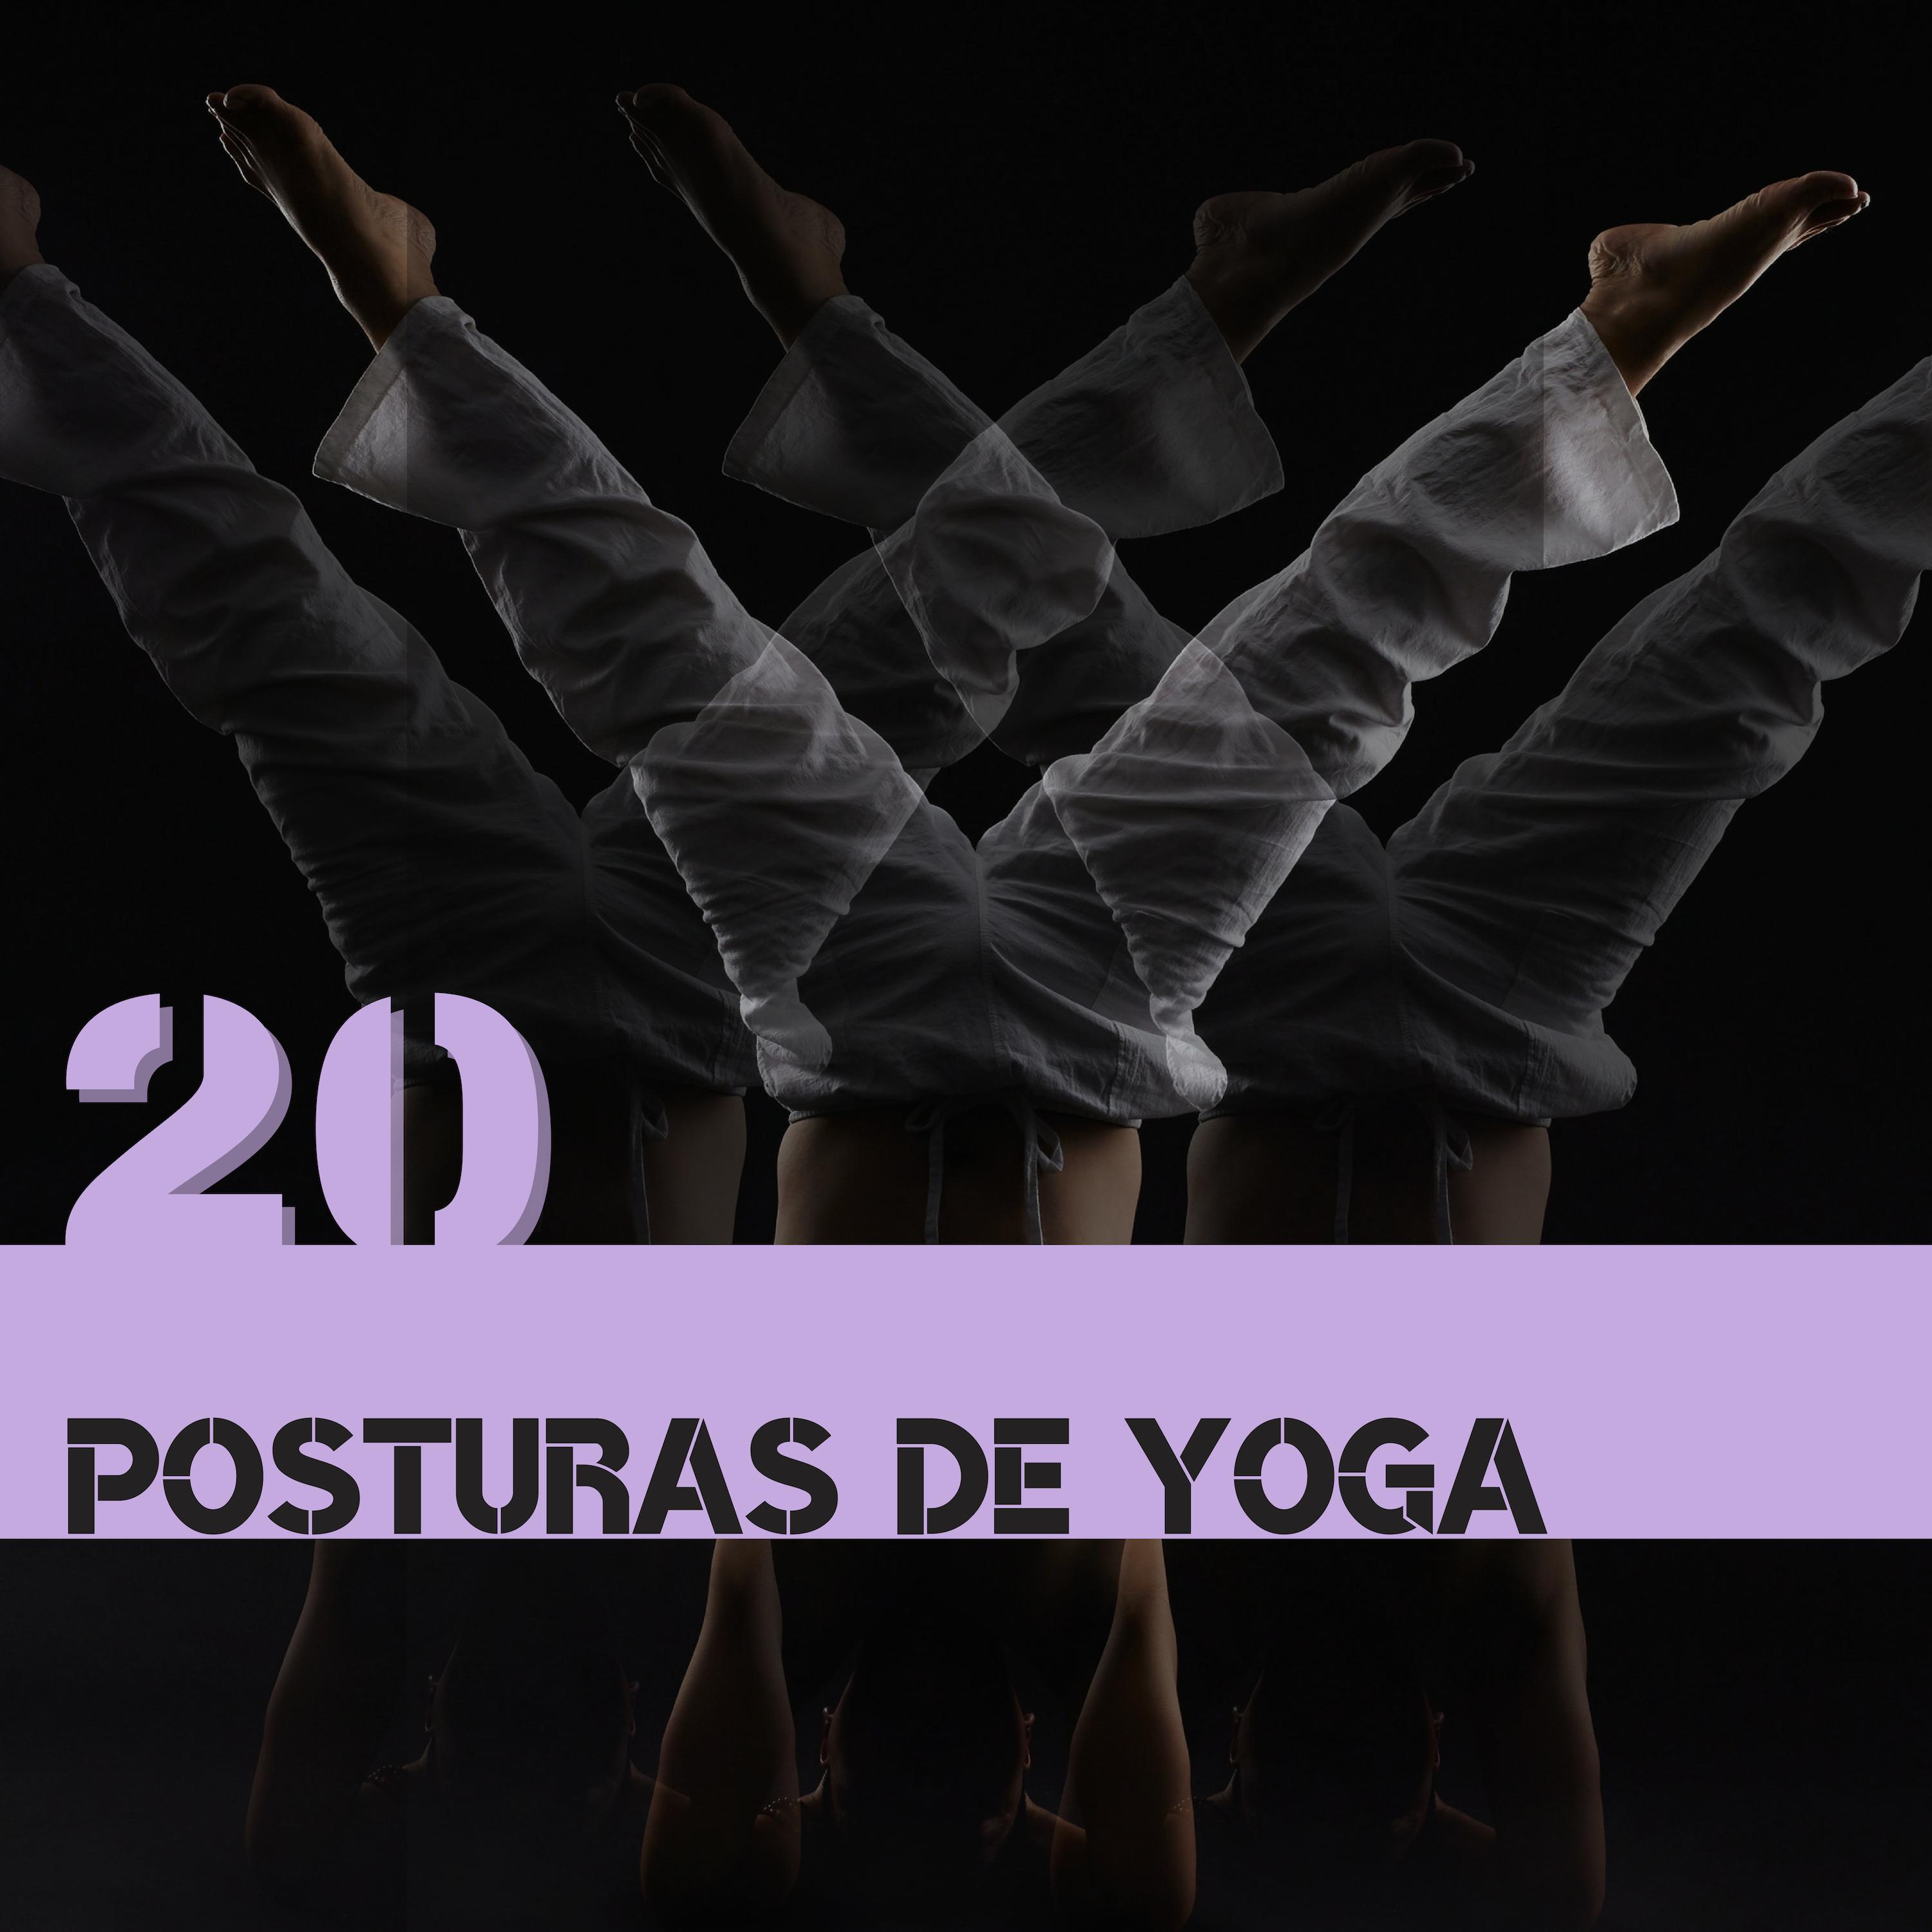 20 Posturas de Yoga - Canciones Clases de Yoga y Meditación